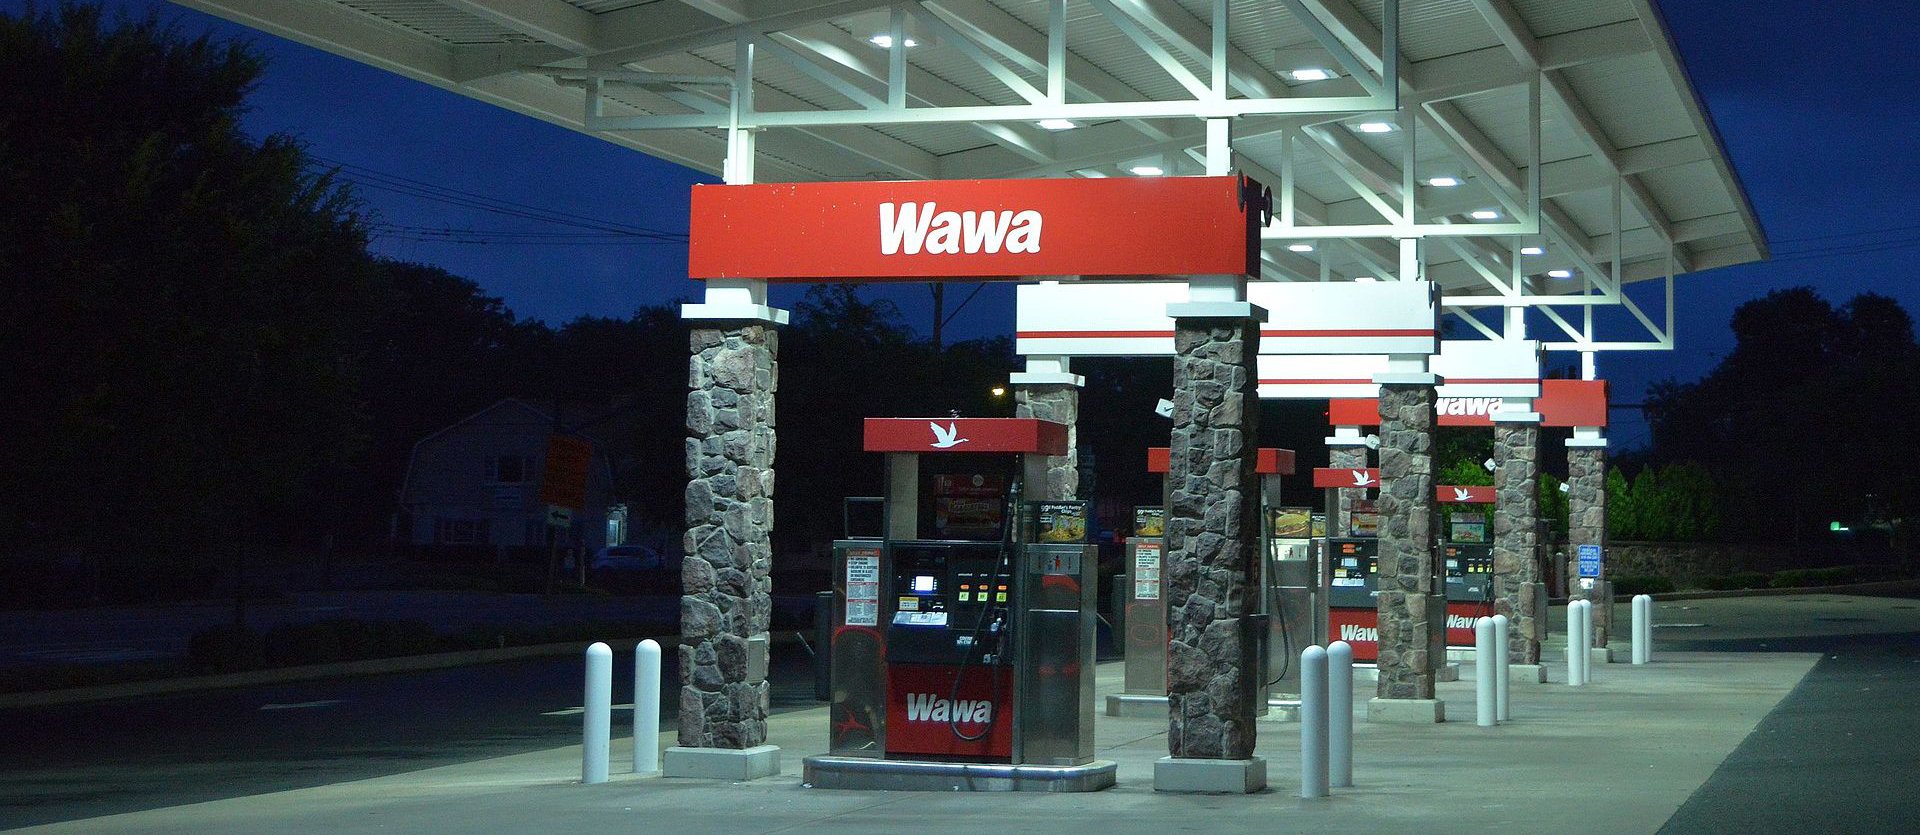 Wawa gas station